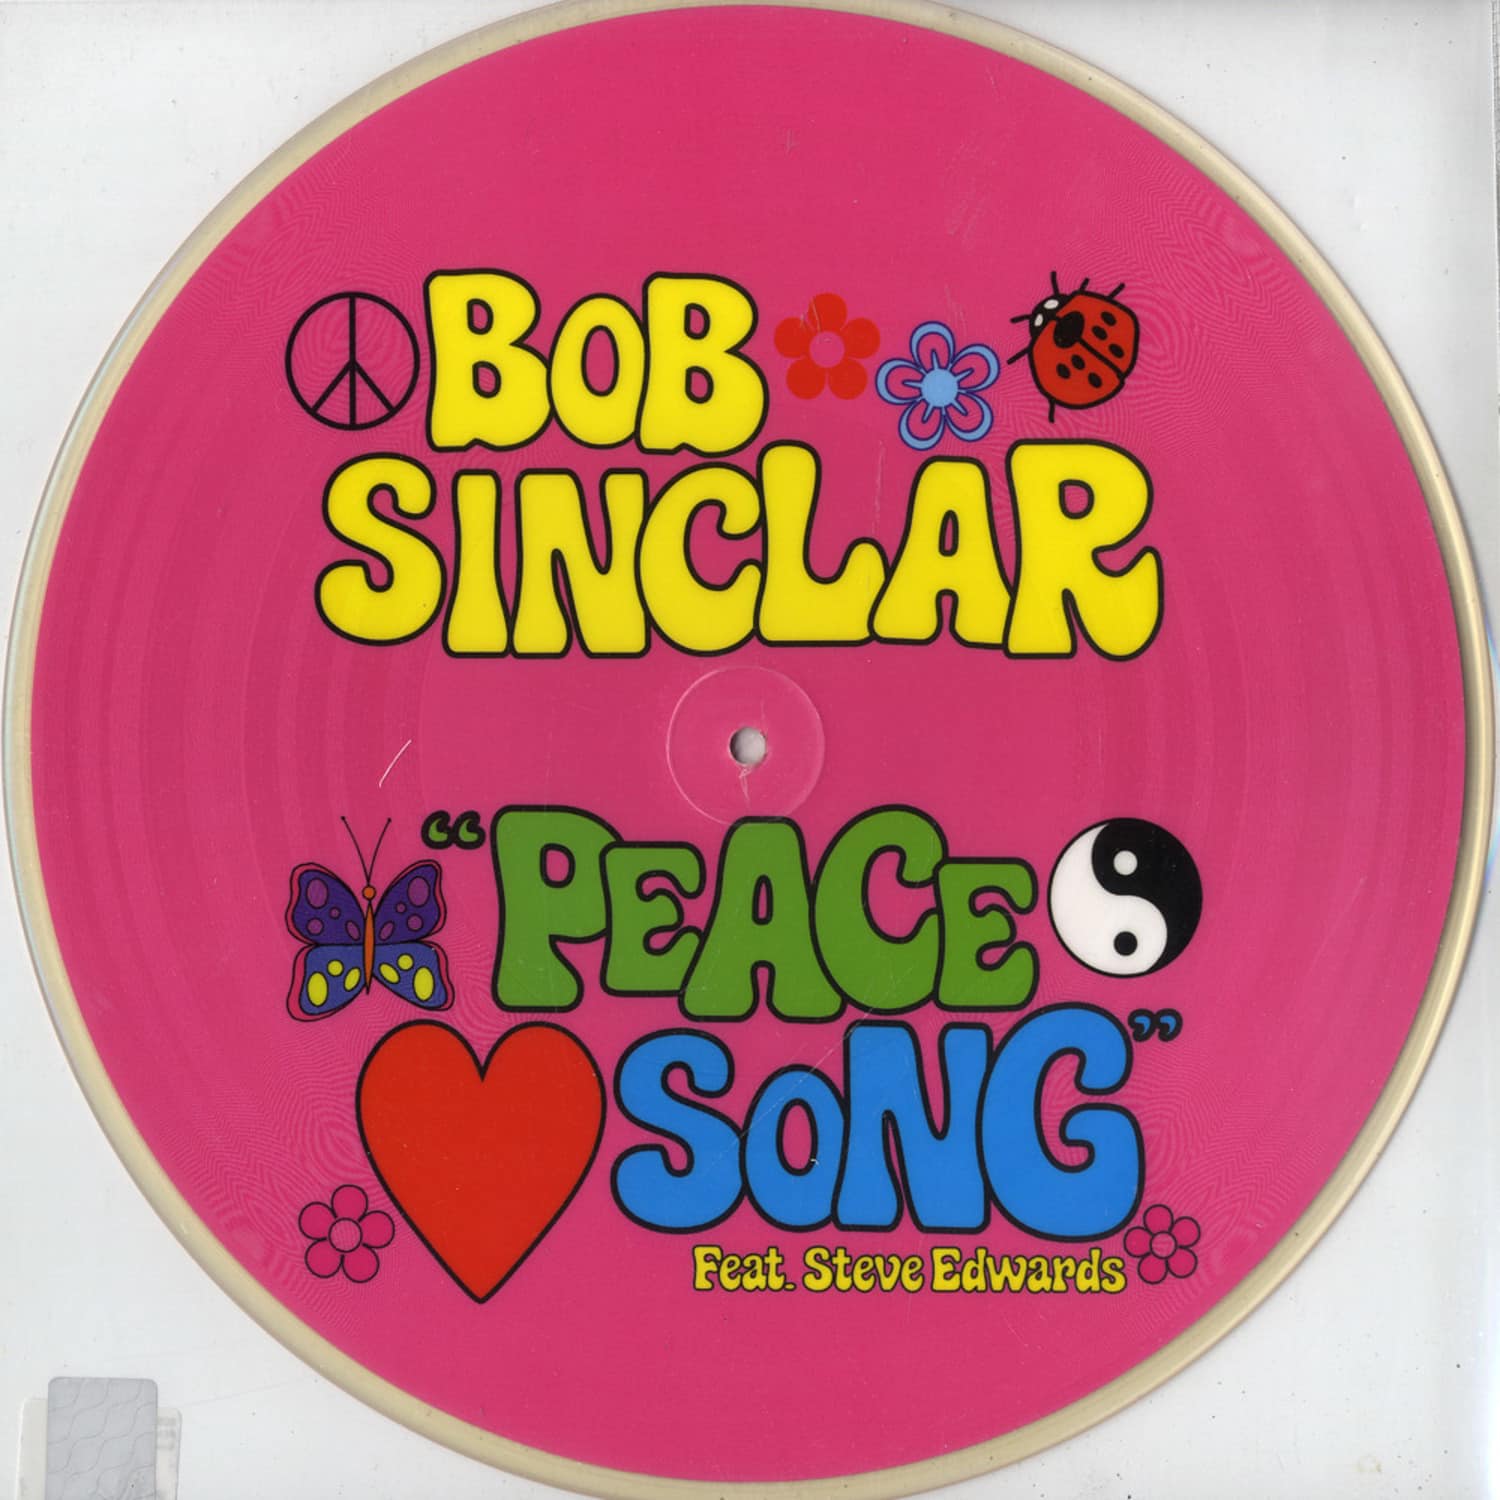 Bob Sinclar - PEACE SONG 